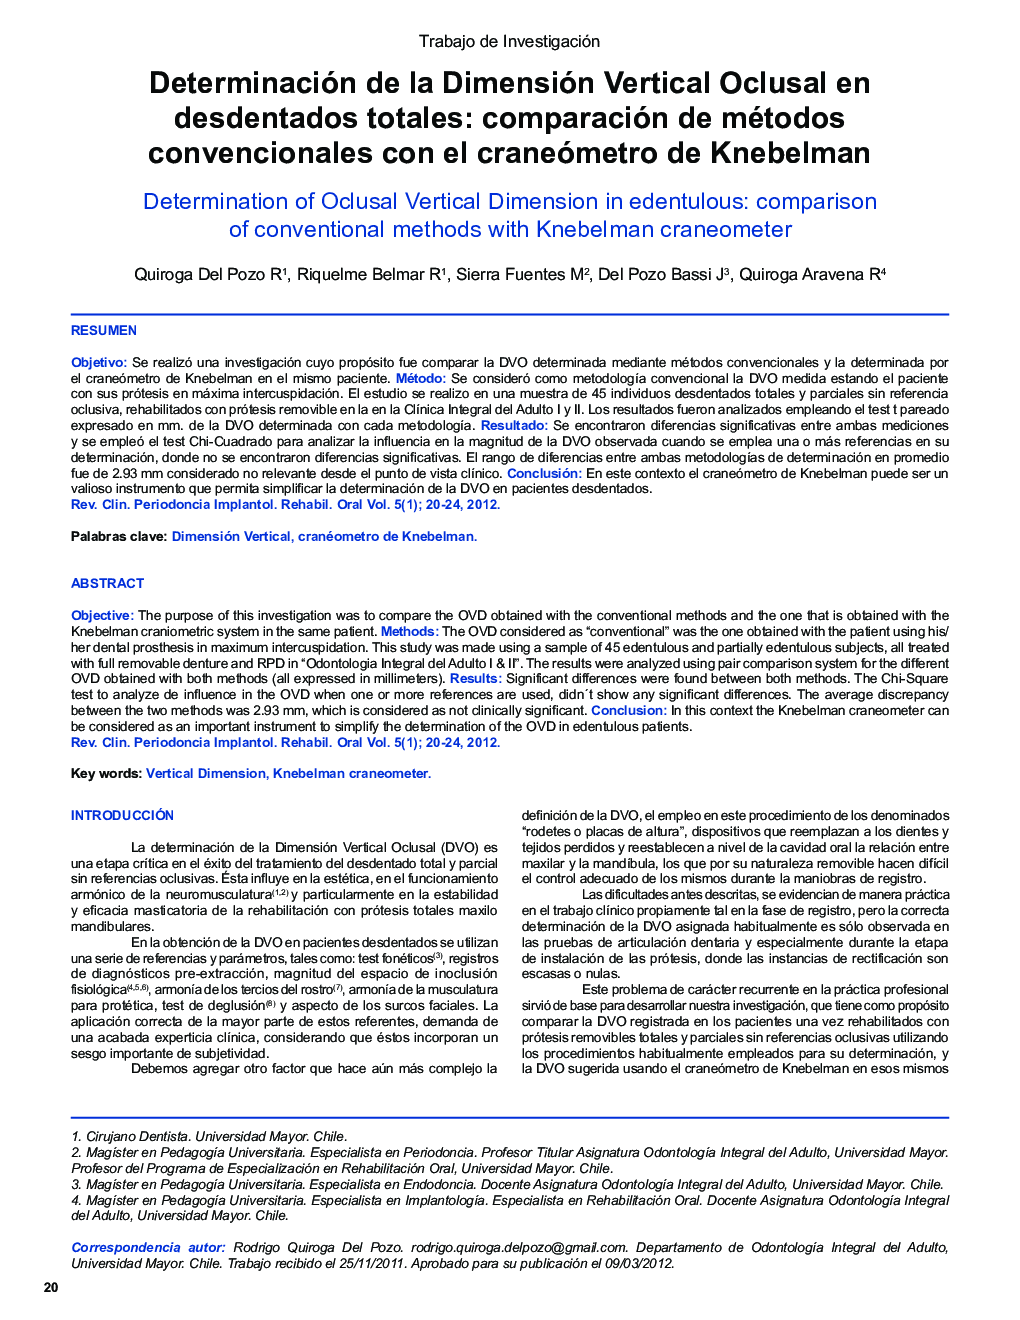 Determinación de la Dimensión Vertical Oclusal en desdentados totales: comparación de métodos convencionales con el craneómetro de Knebelman